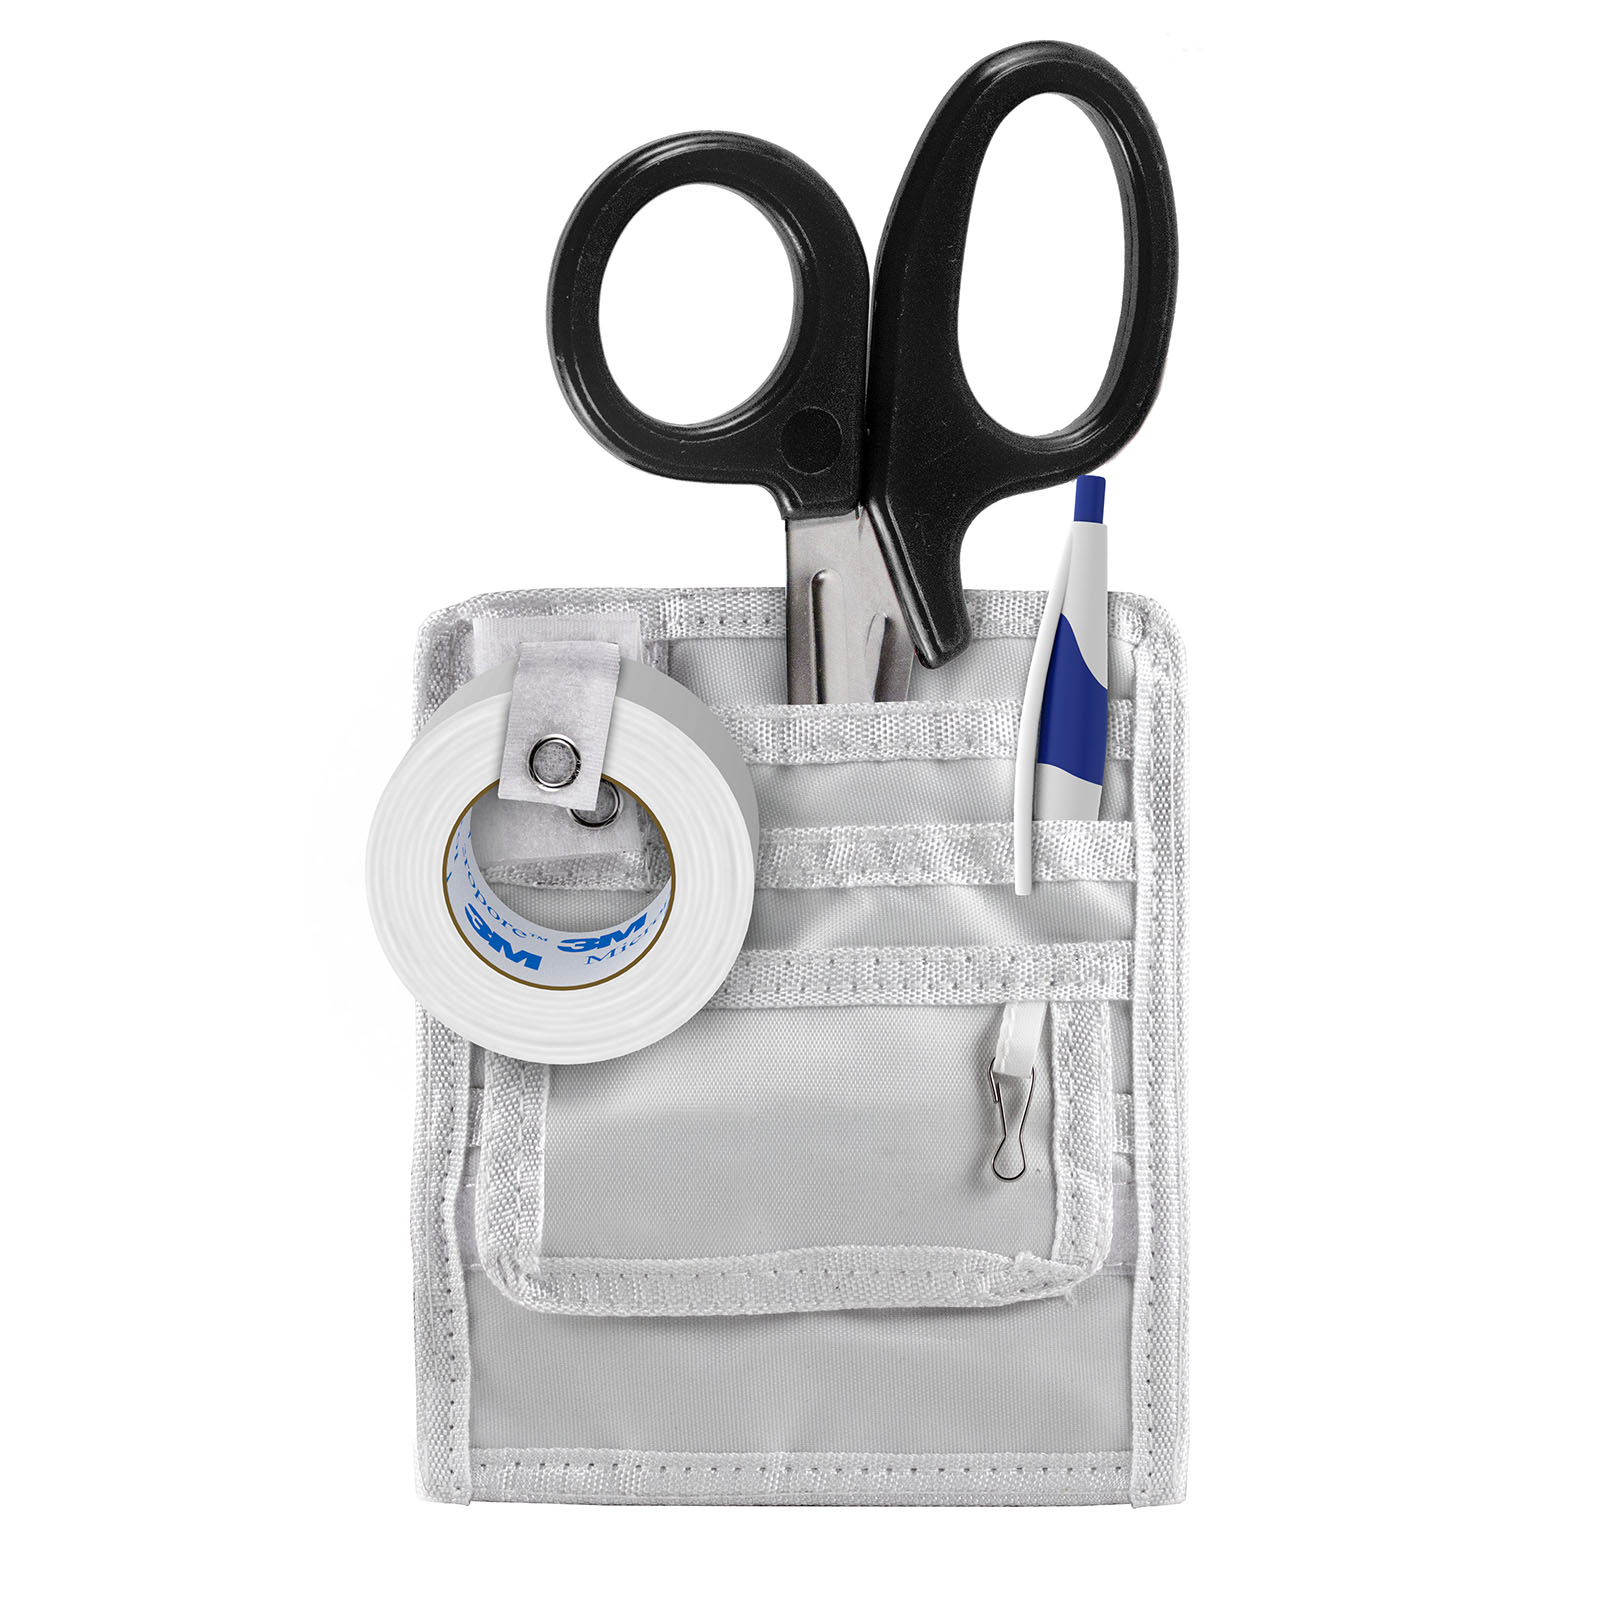 https://mdpocket.com/image/catalog/Pocket_Equipment/Nurse_Packs/NursePocketPacks/Nurse_Pocket_Pack_3-1.jpg